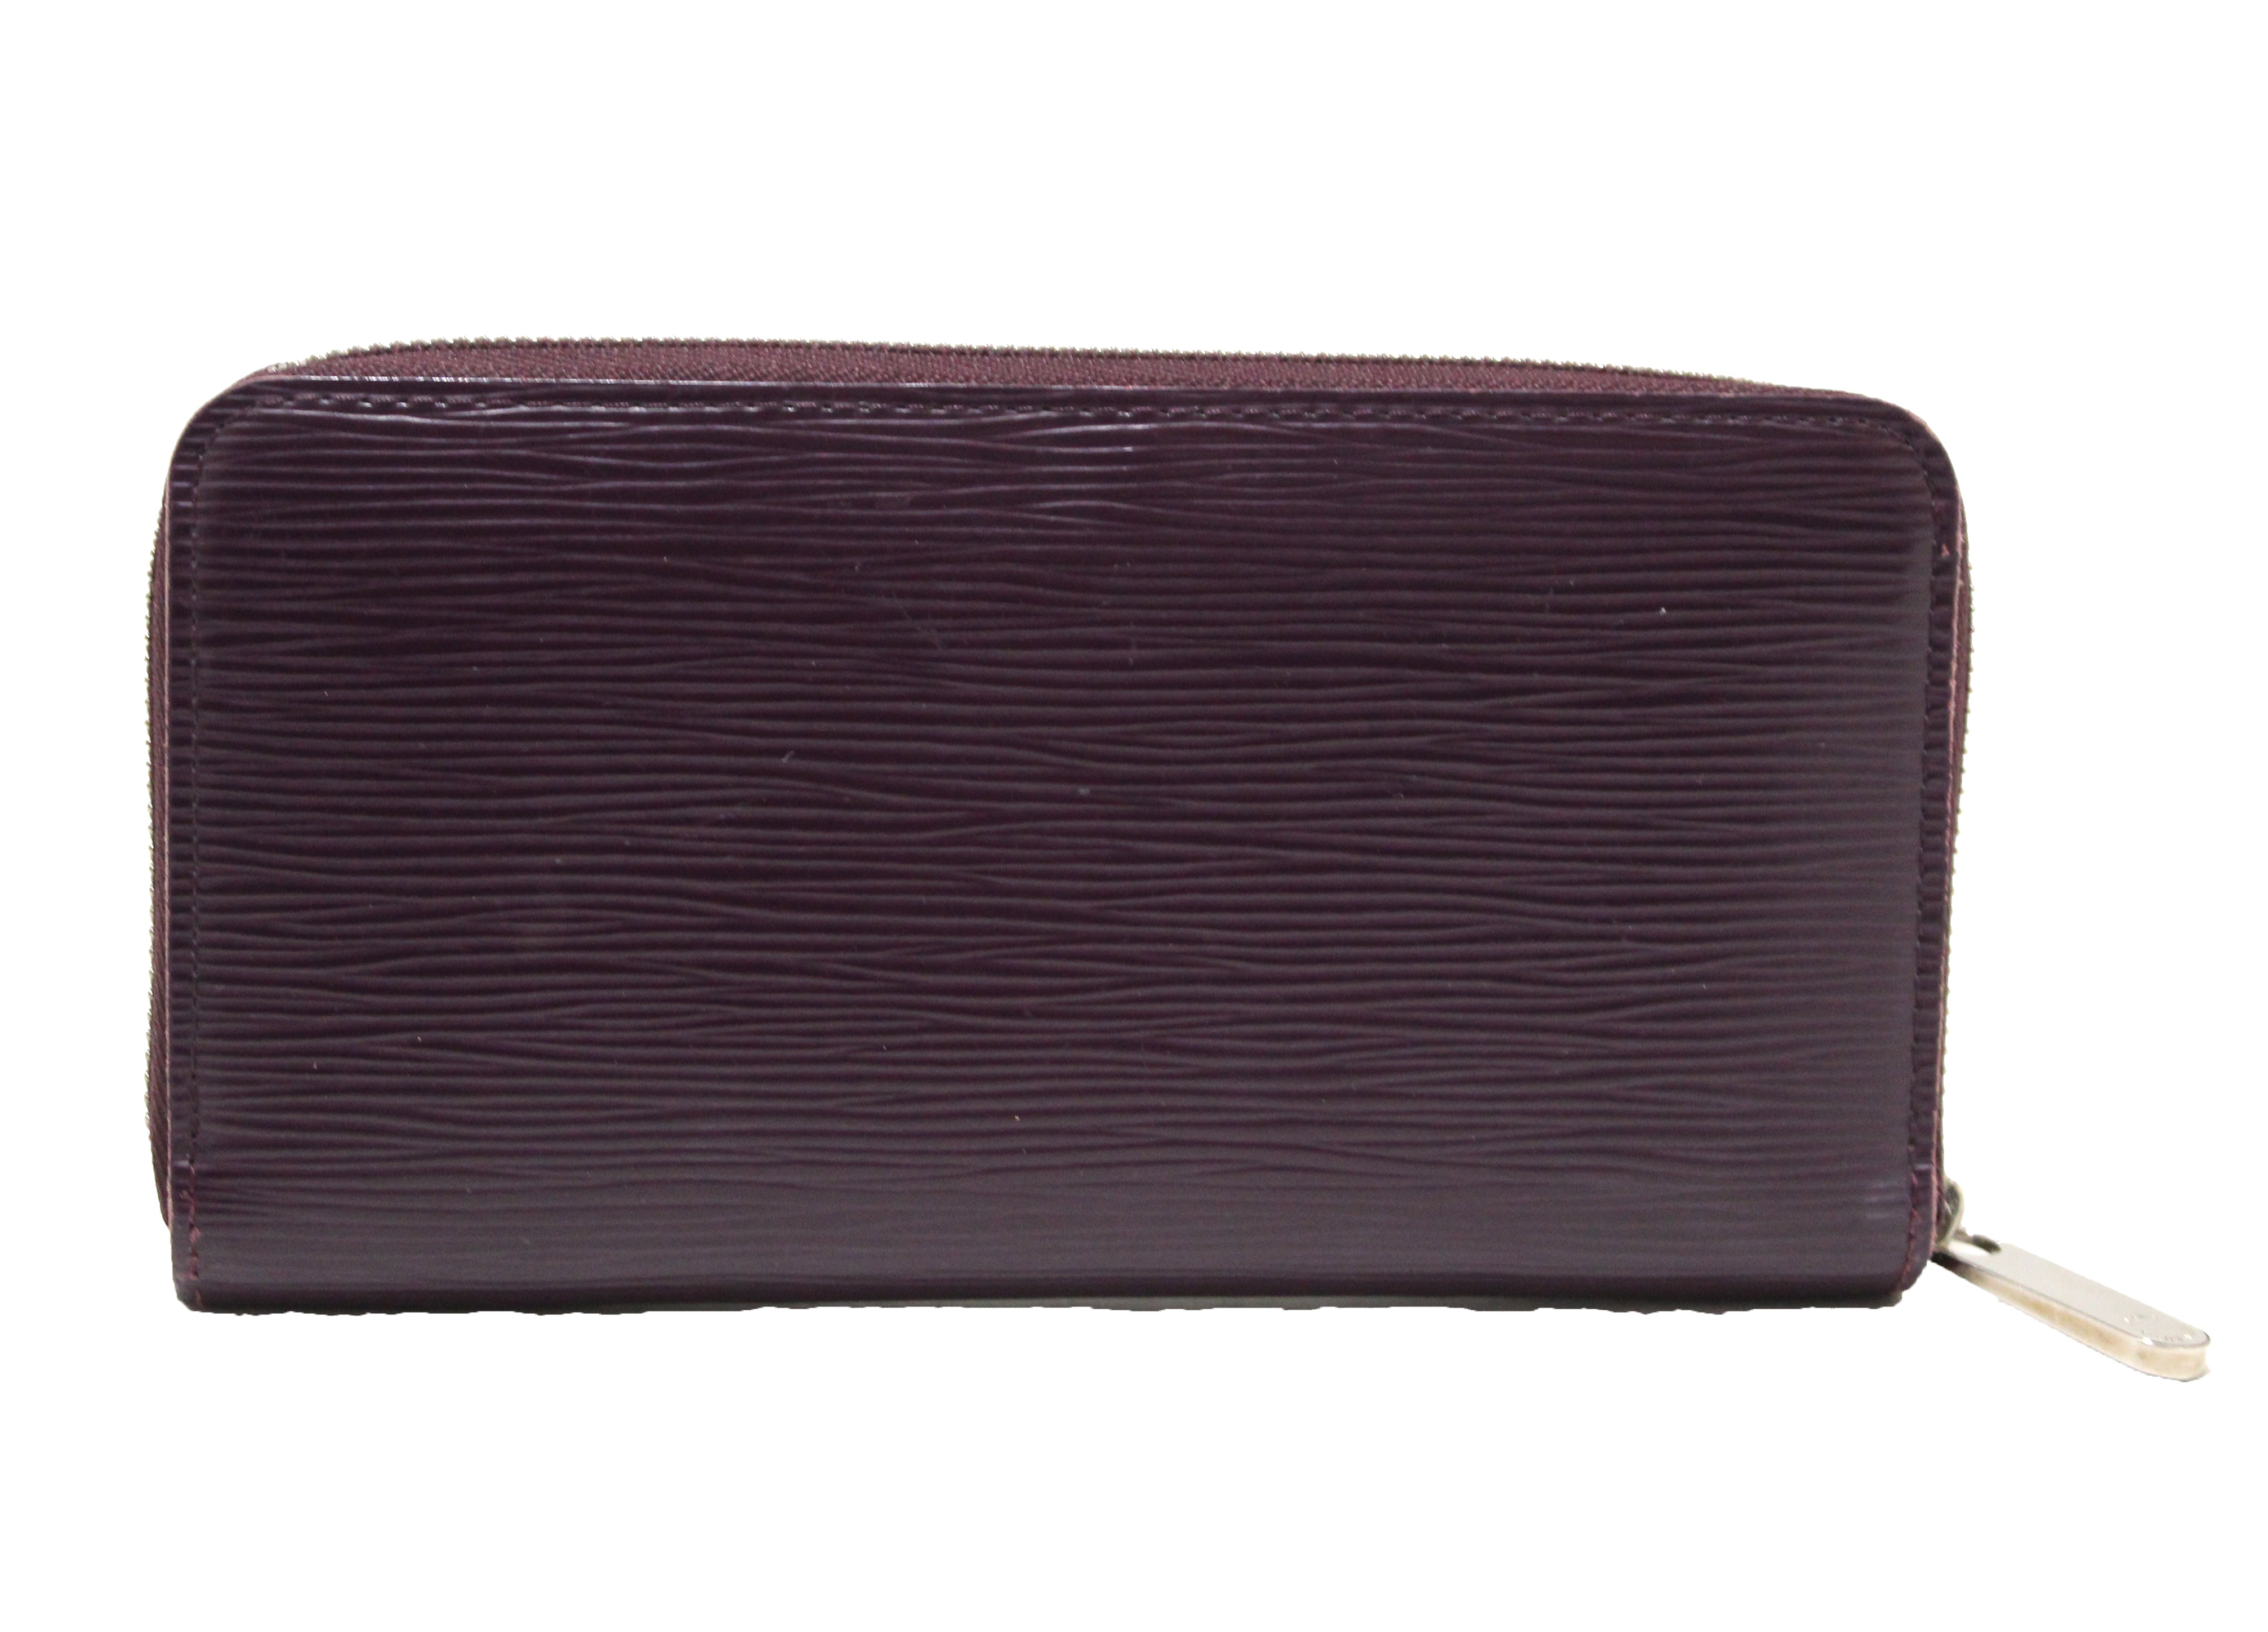 Louis Vuitton Epi Leather Zippy Wallet, Black w/ Original Box and Dust Bag